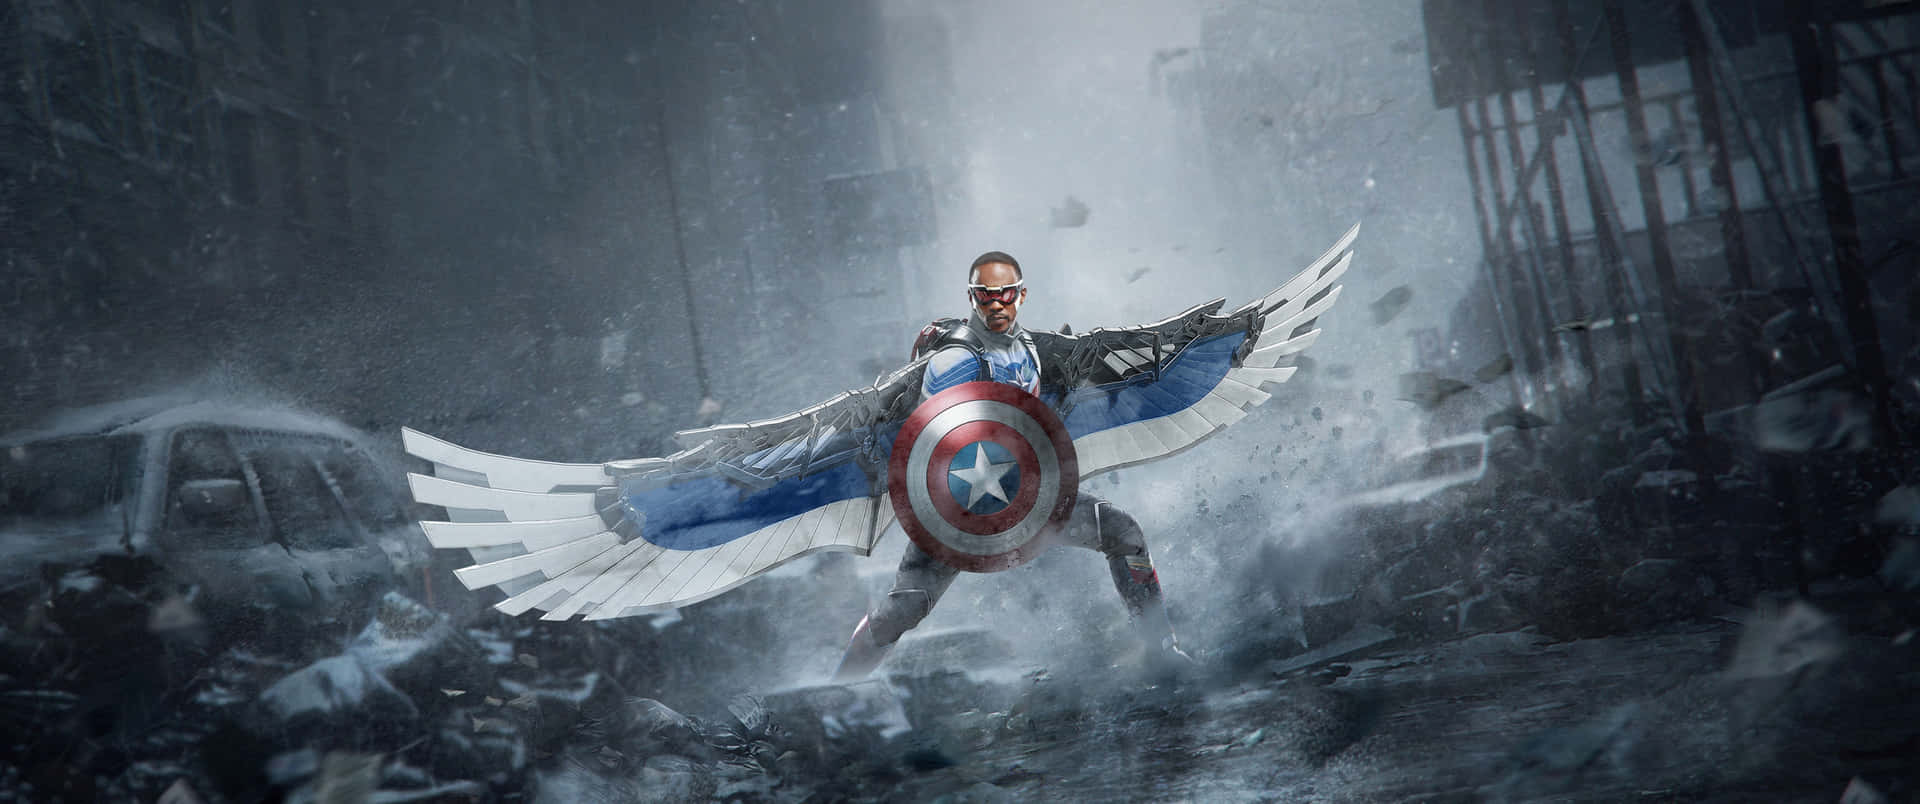 Capitánamérica En Acción. Fondo de pantalla